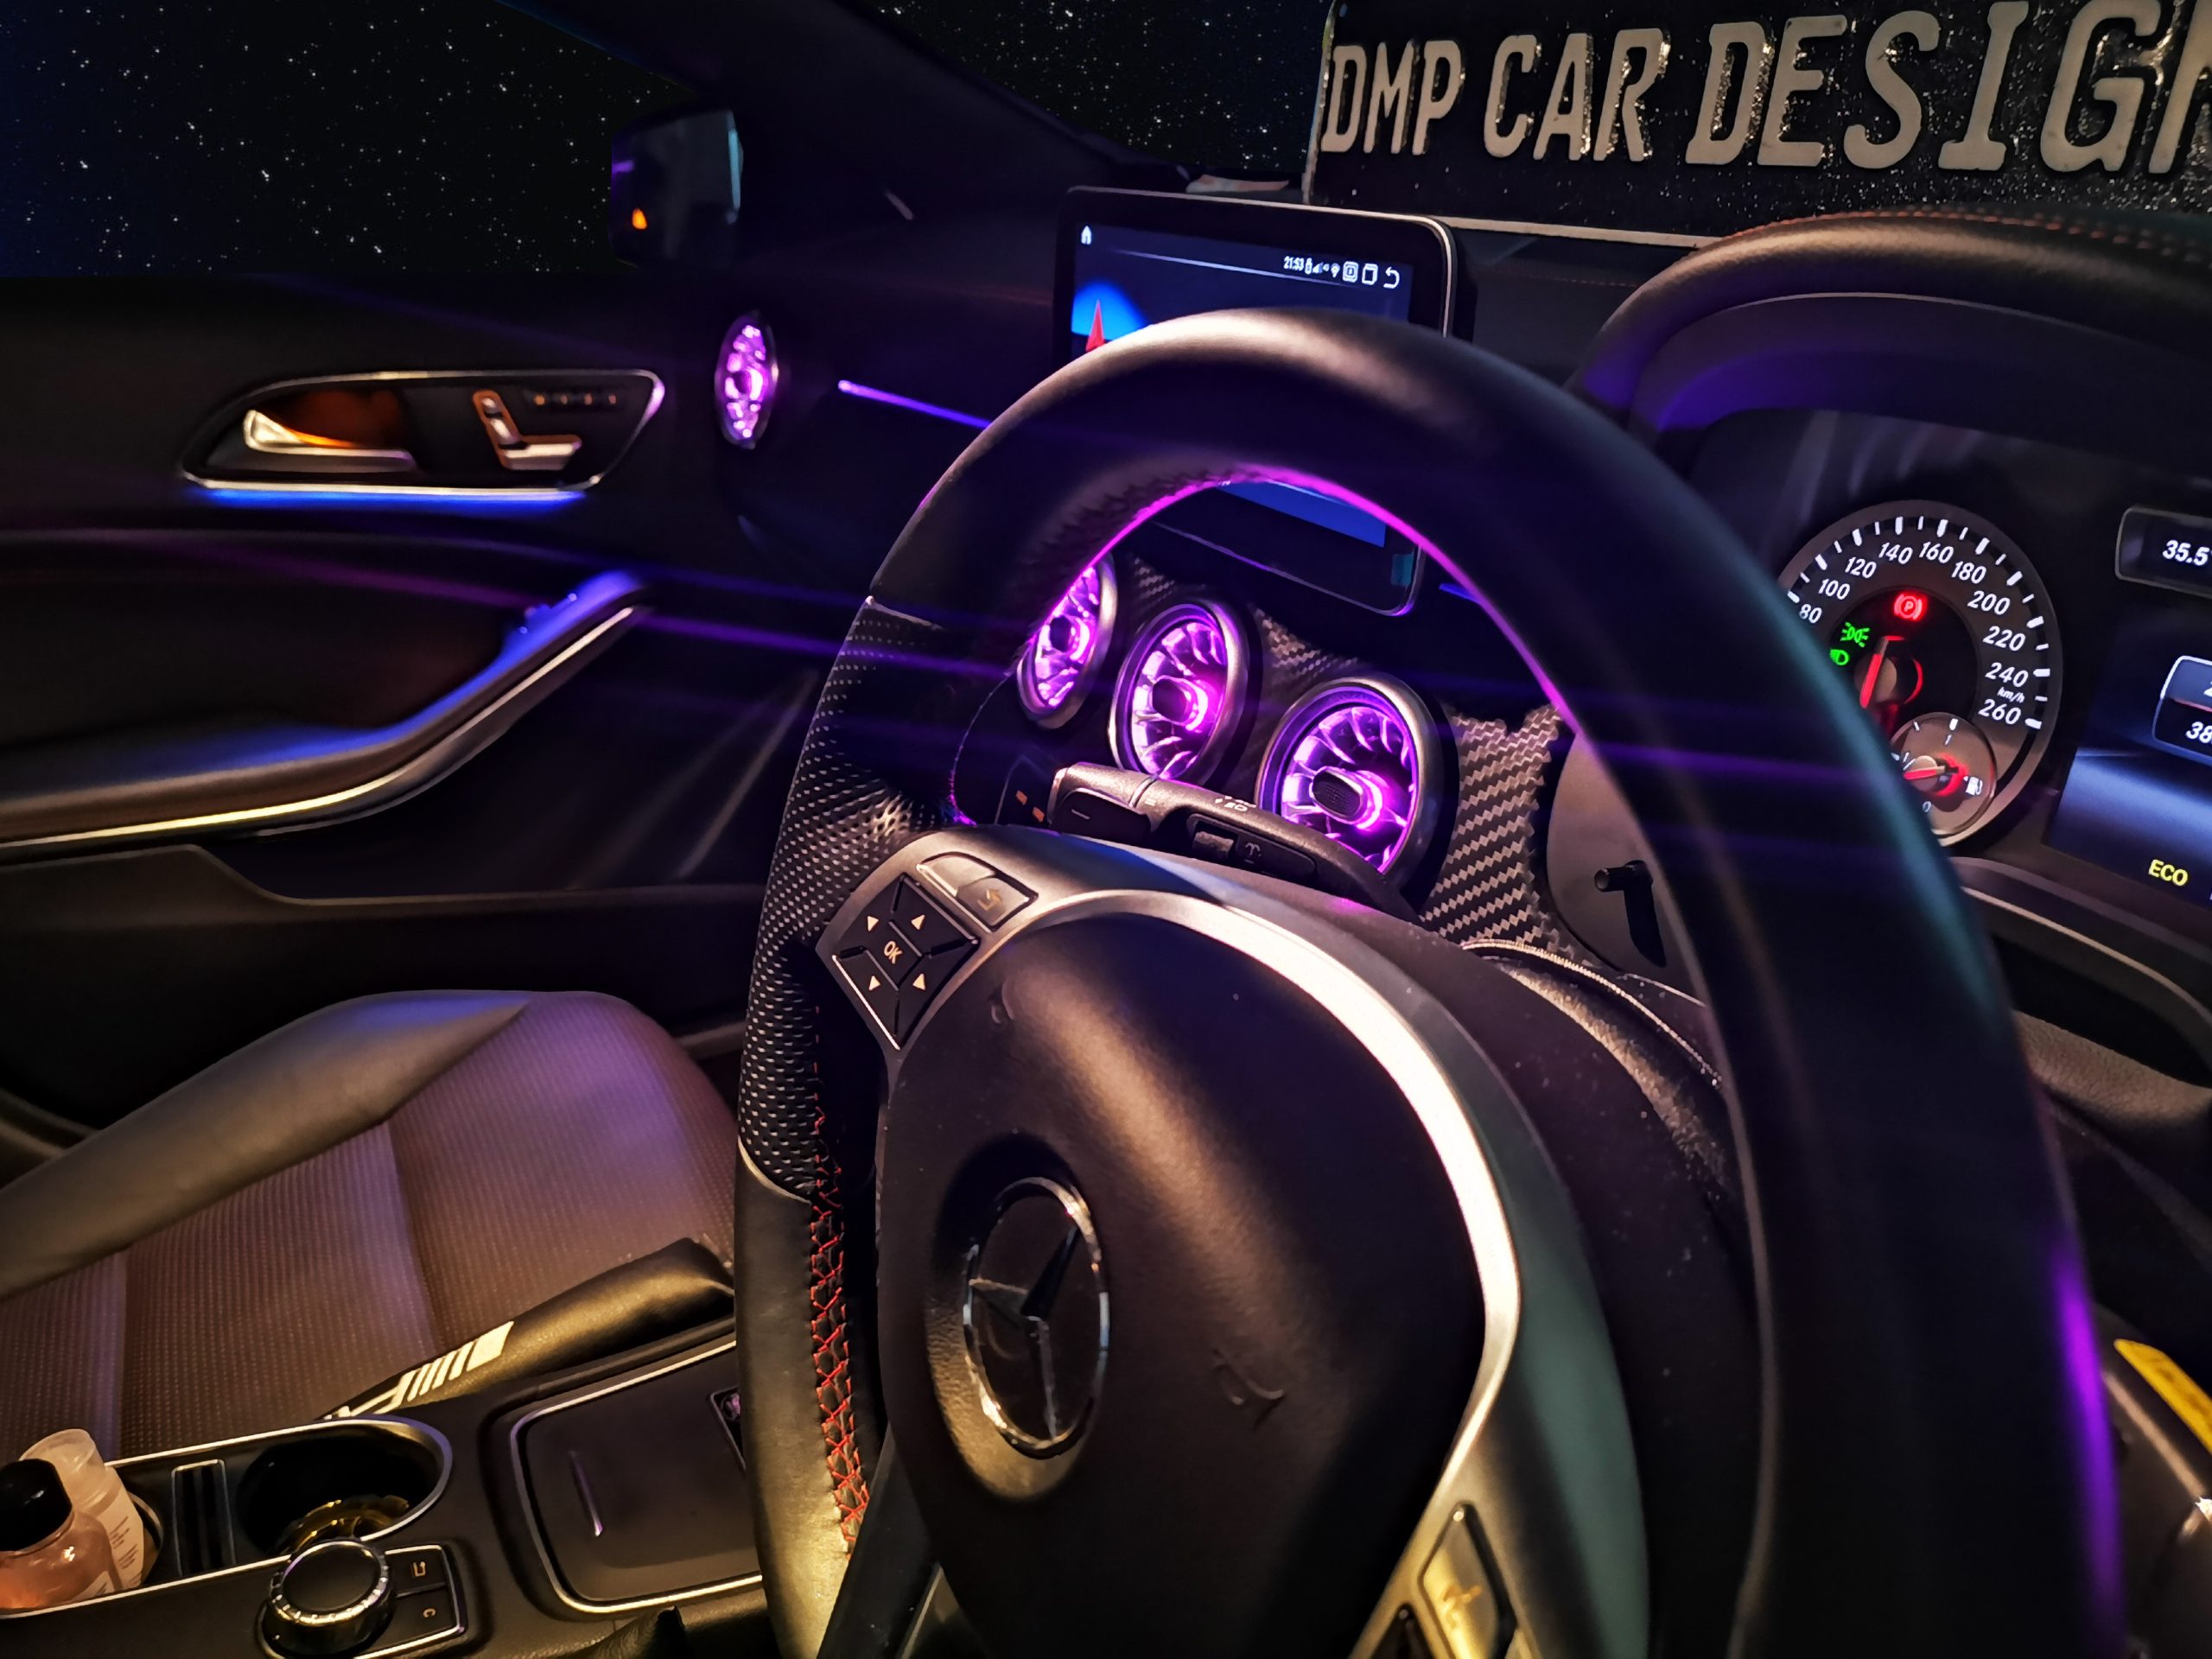 Ambient Kit Benz – DMP Car Design